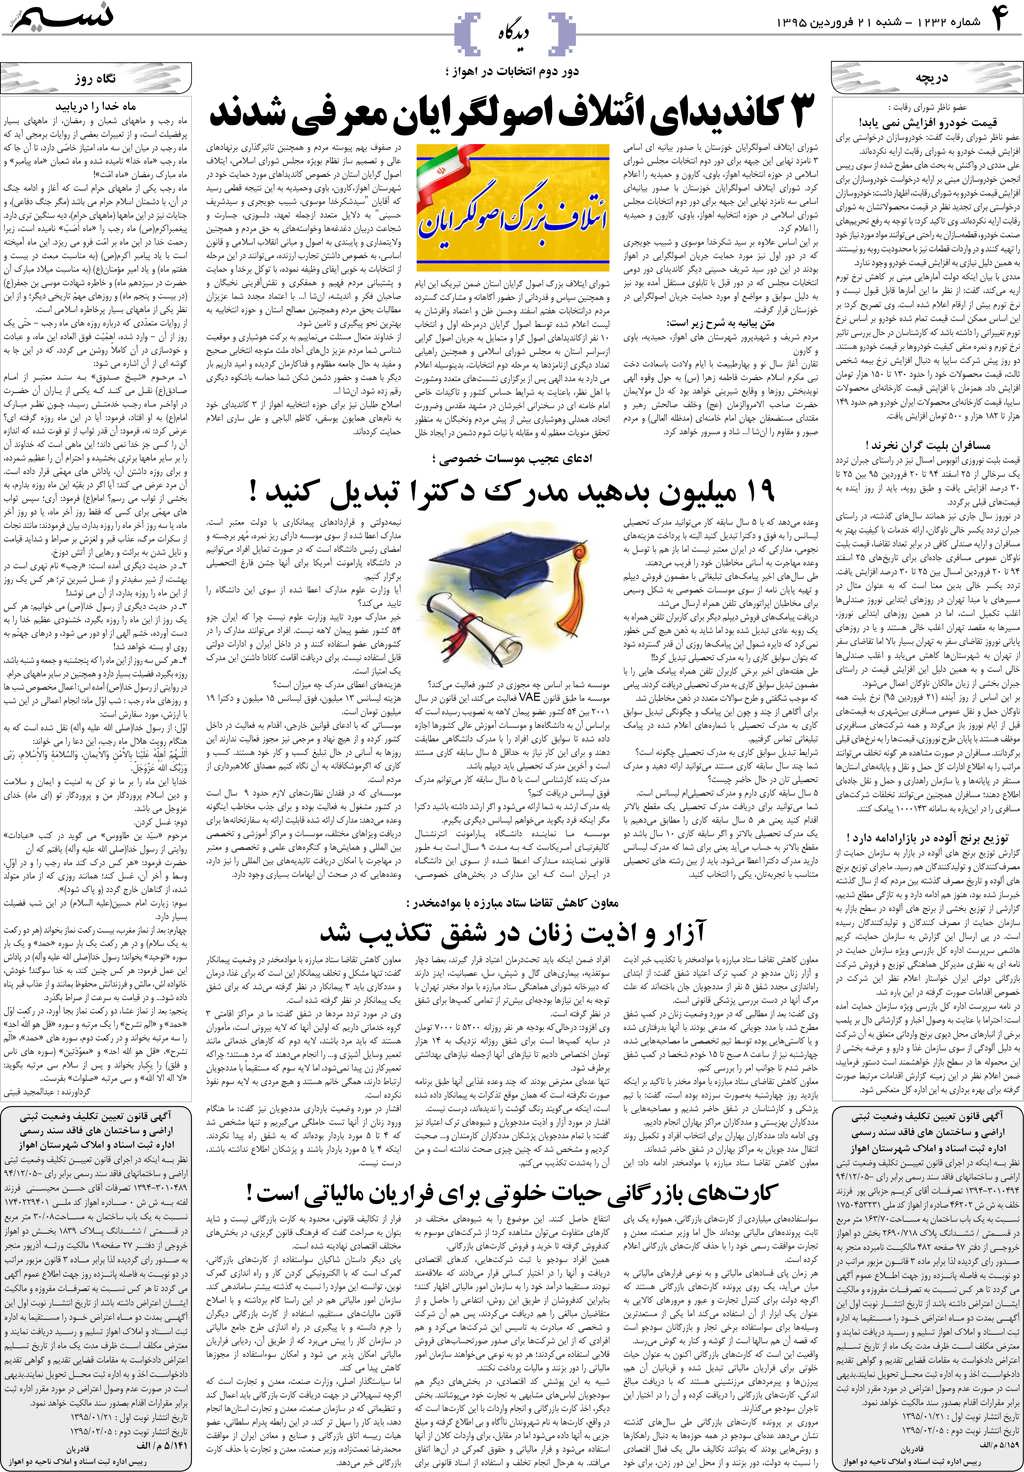 صفحه دیدگاه روزنامه نسیم شماره 1232